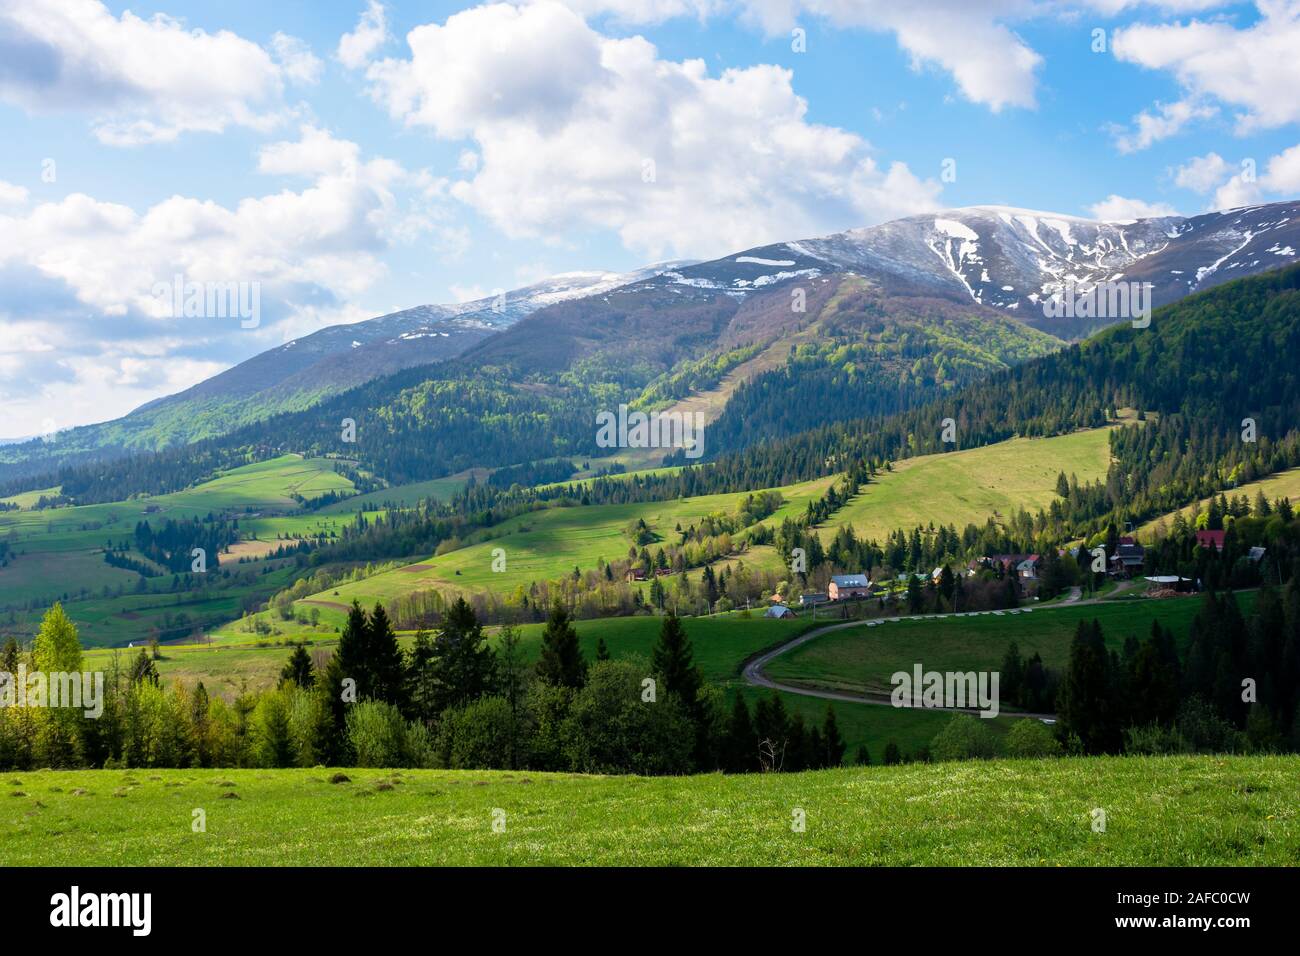 Bergige Landschaft Landschaft im Frühjahr. gras wiese auf einem Hügel. Bergrücken mit schneebedeckten Gipfeln in der Ferne. sonniges Wetter mit Stockfoto